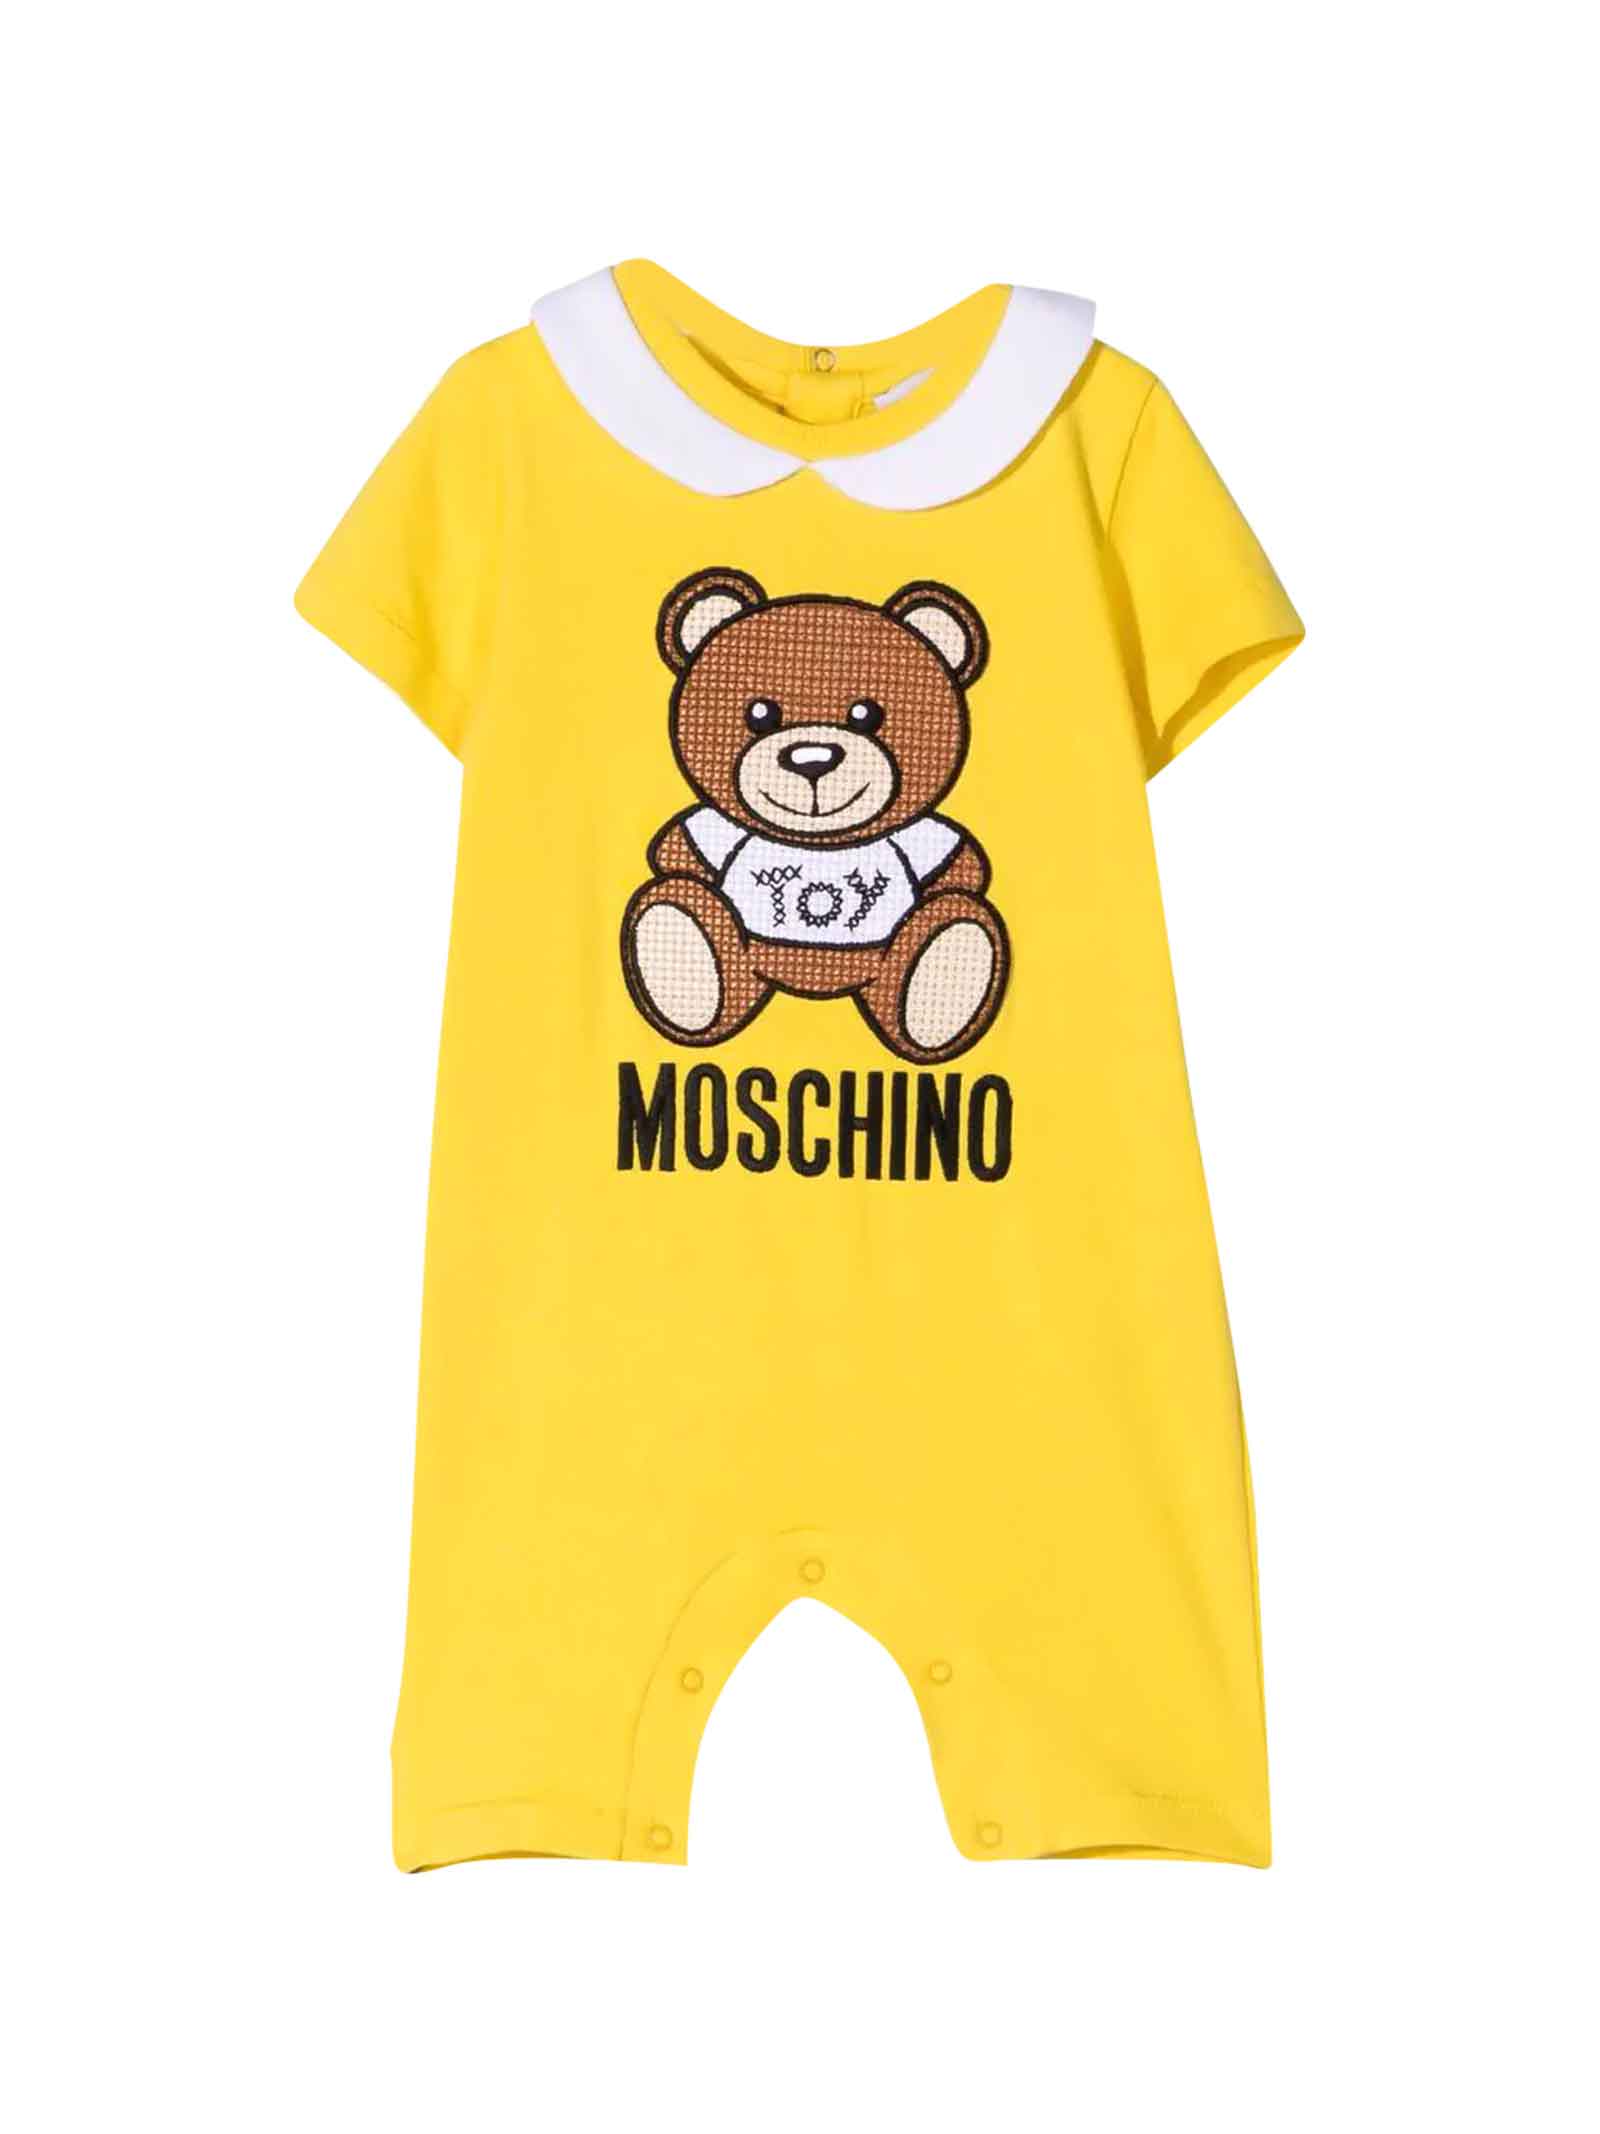 Moschino Yellow Romper Baby Unisex